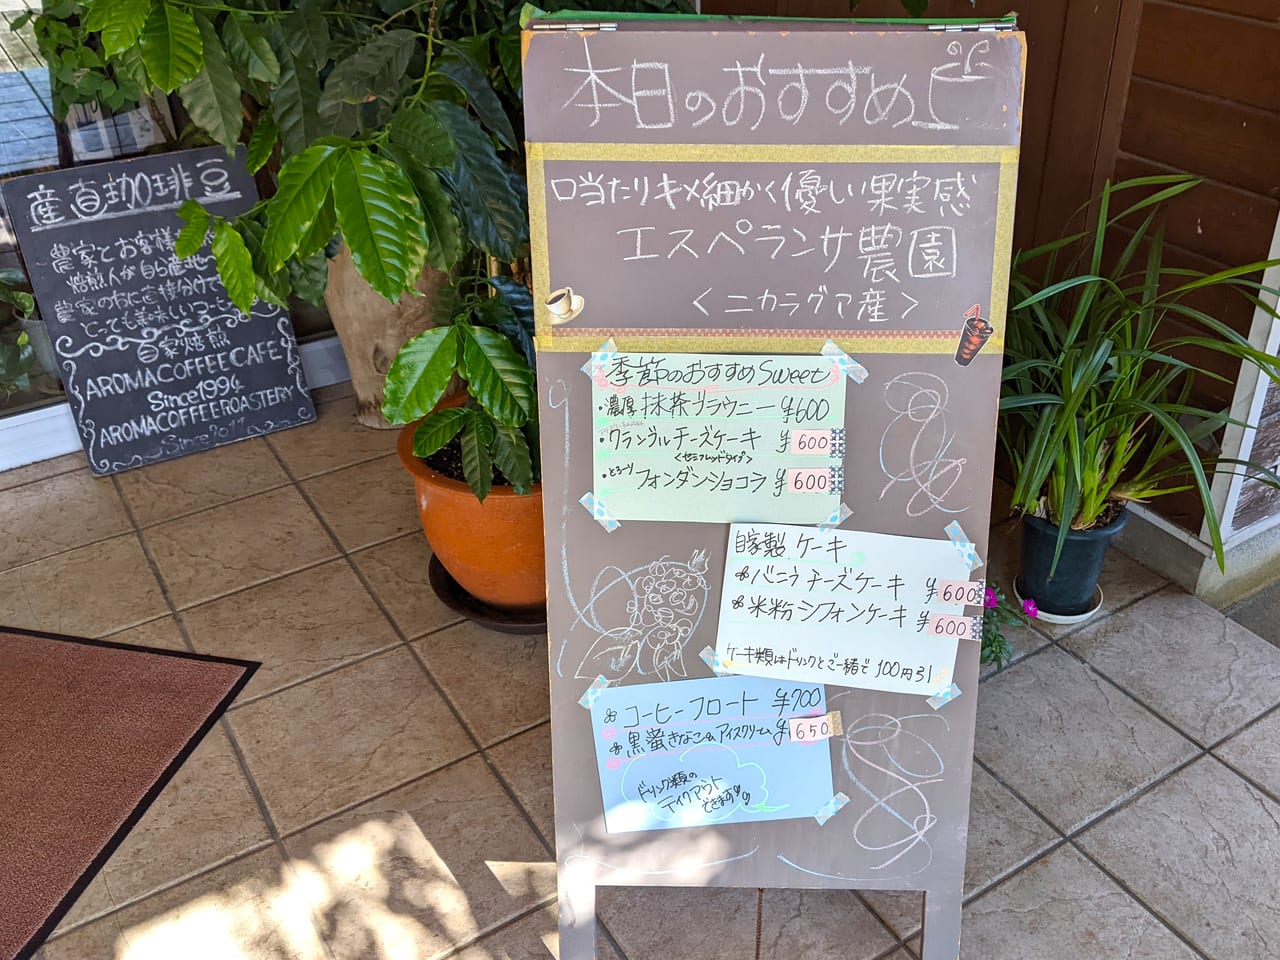 「アロマコーヒーカフェ東岡山店」の看板